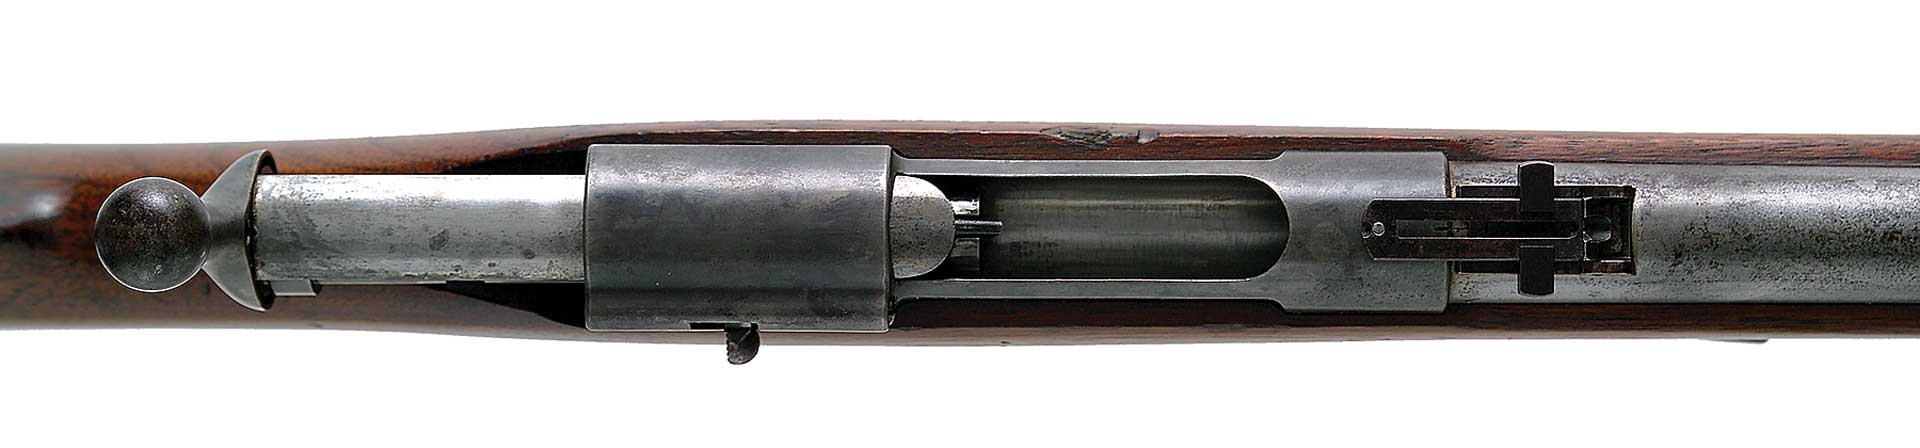 bolt-action ward-burton reeiver rifle gun historical action open